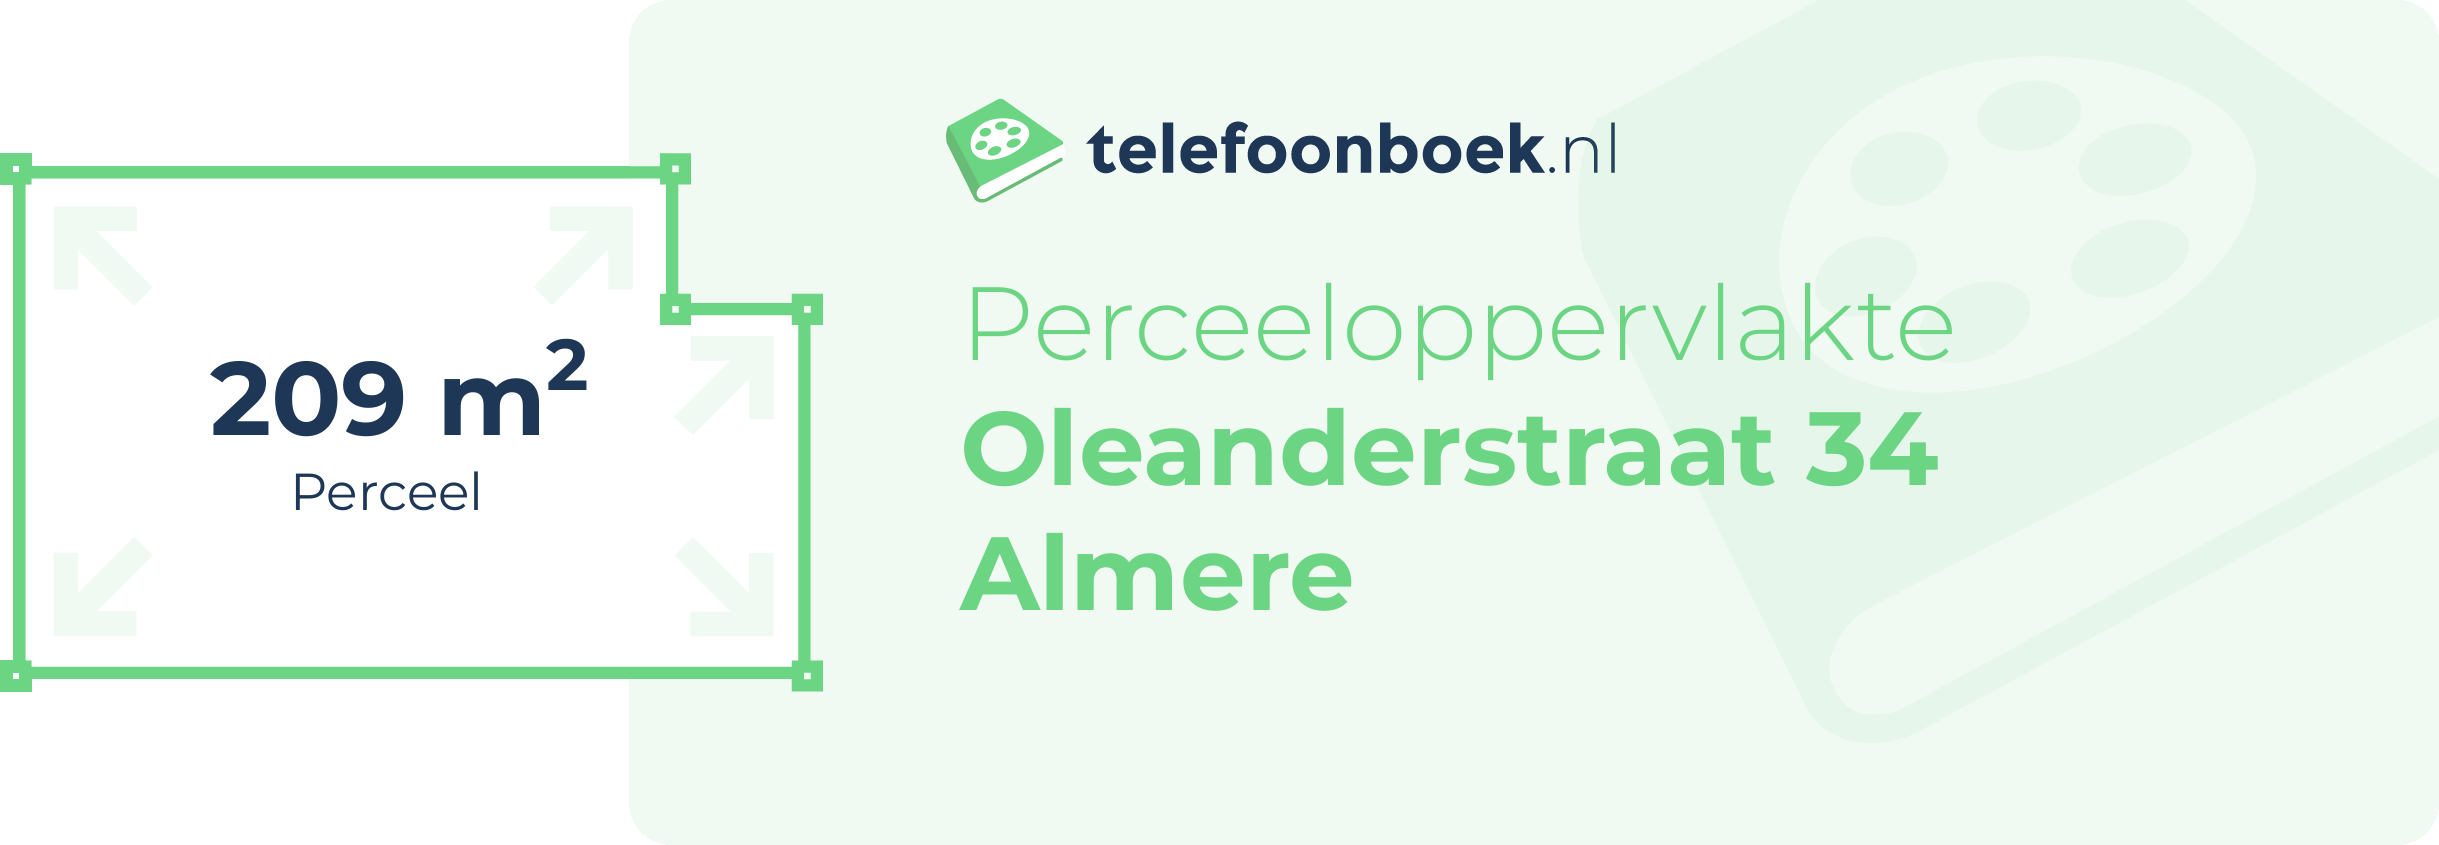 Perceeloppervlakte Oleanderstraat 34 Almere